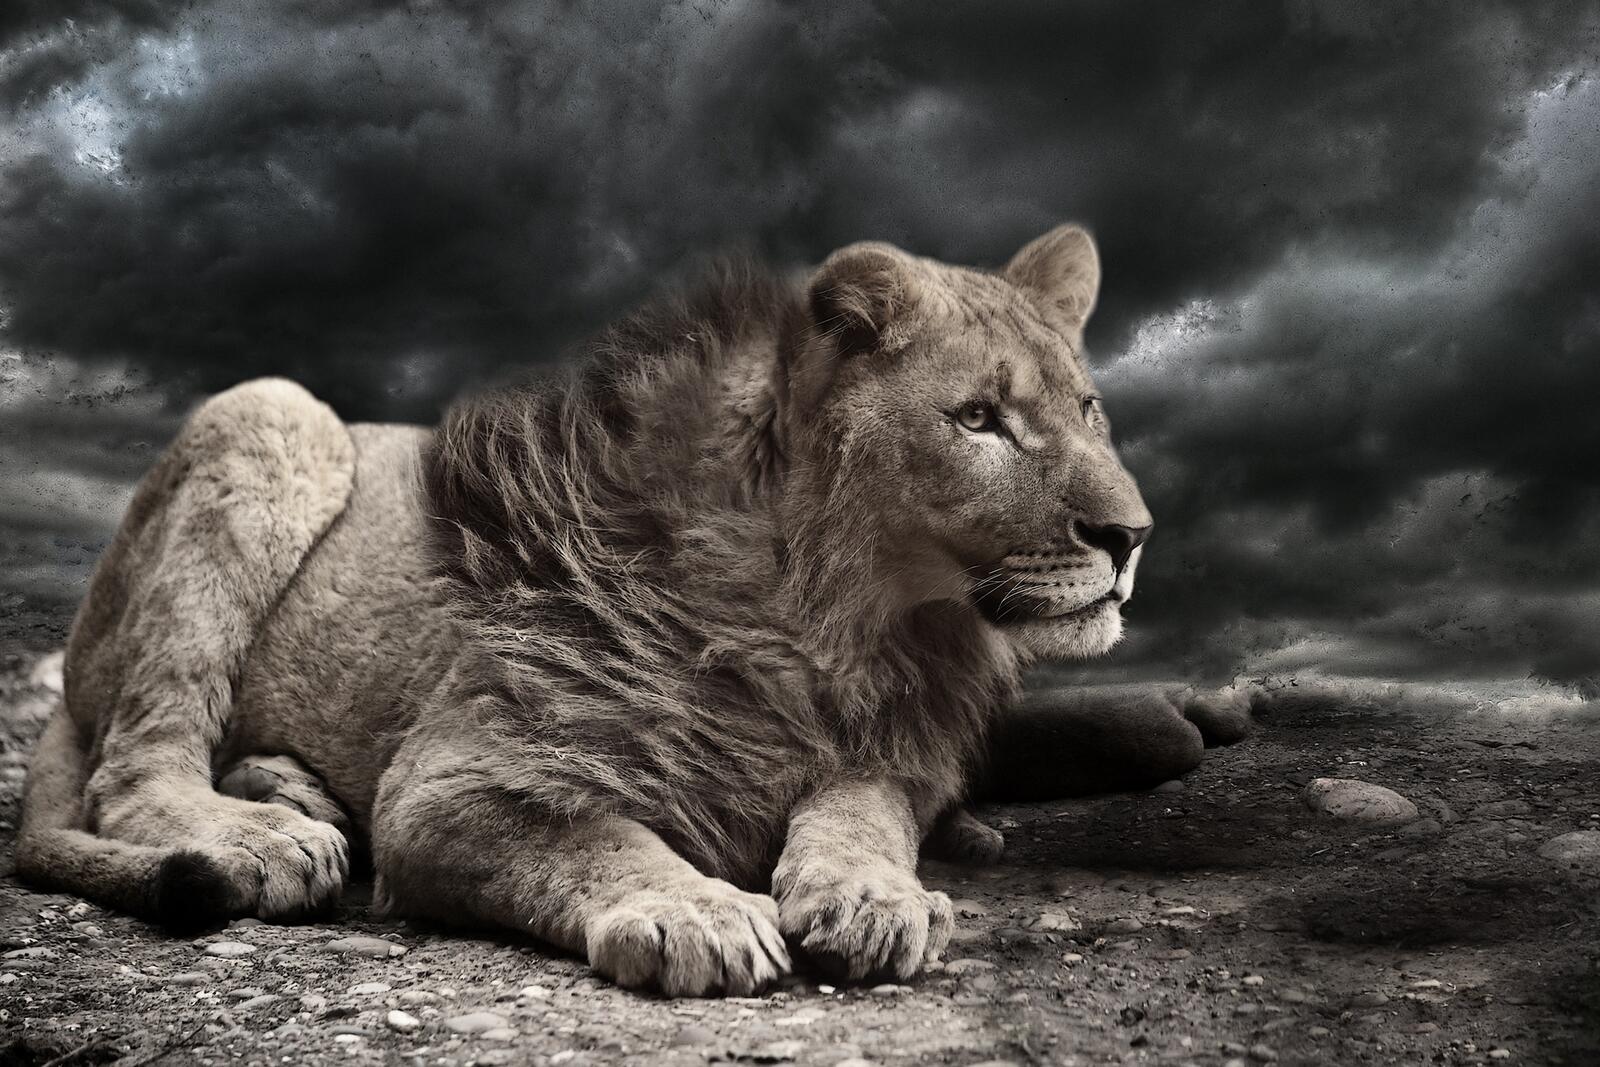 Free photo A lion against an overcast sky.